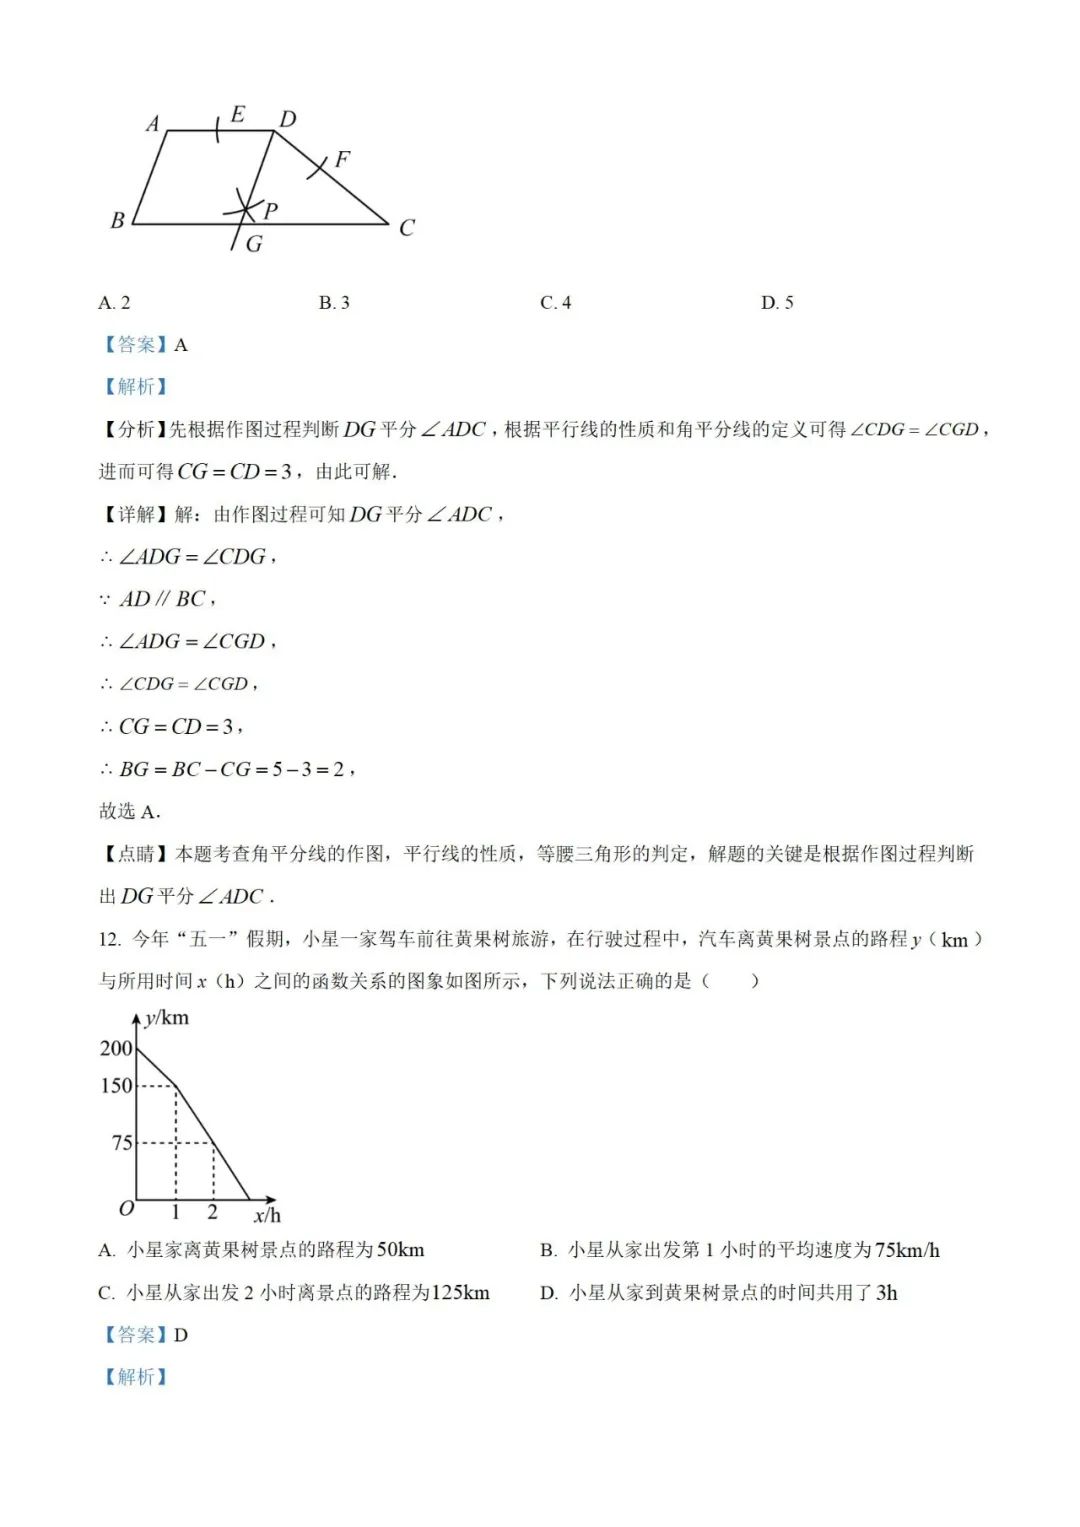 【中考真题】2023年贵州省中考数学真题 (带答案解析) 第14张